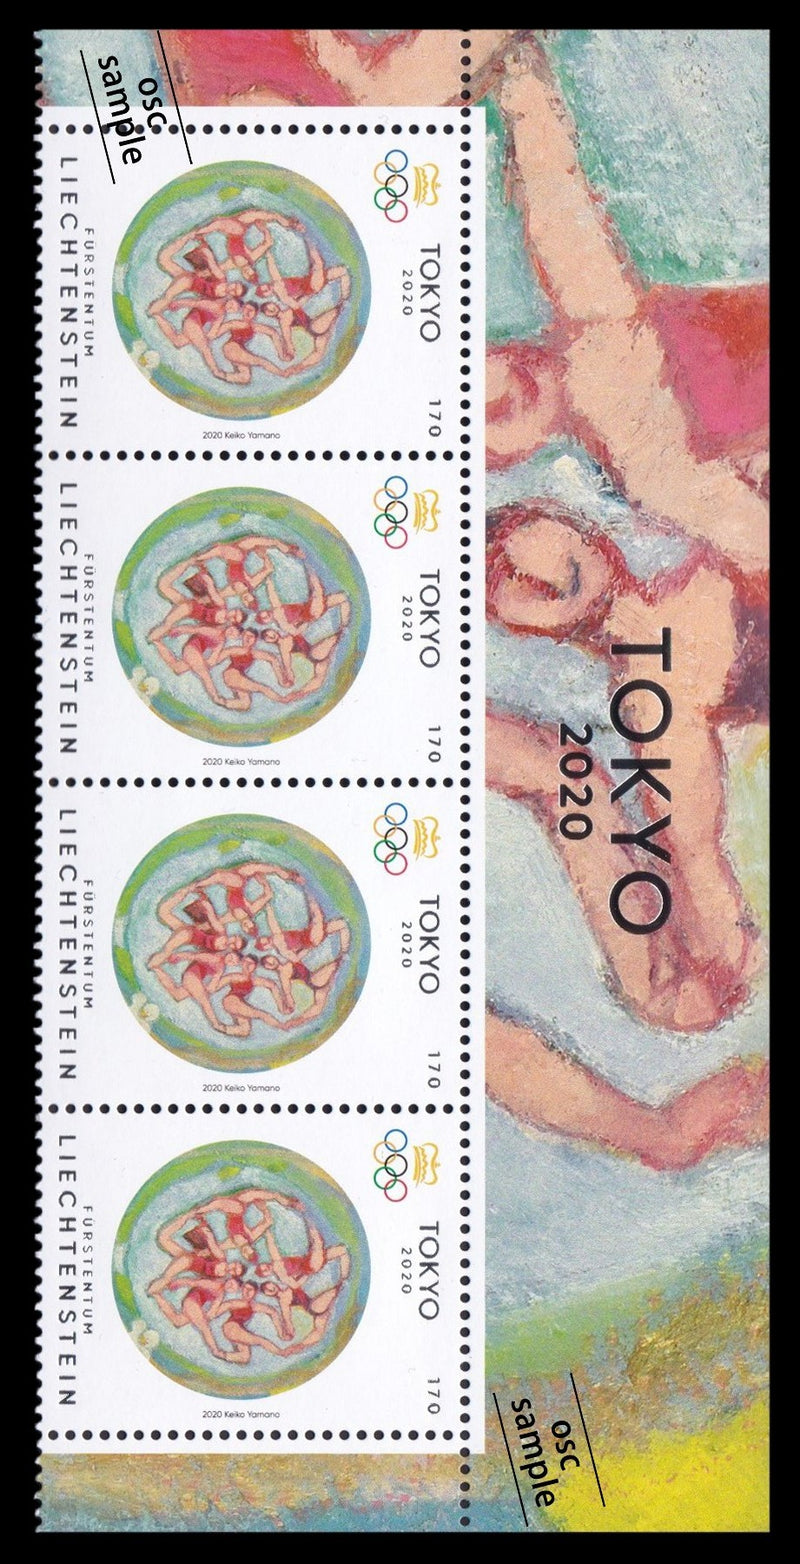 TOKYO2020 commemorative stamps of Liechtenstein(block of 4 with margin)